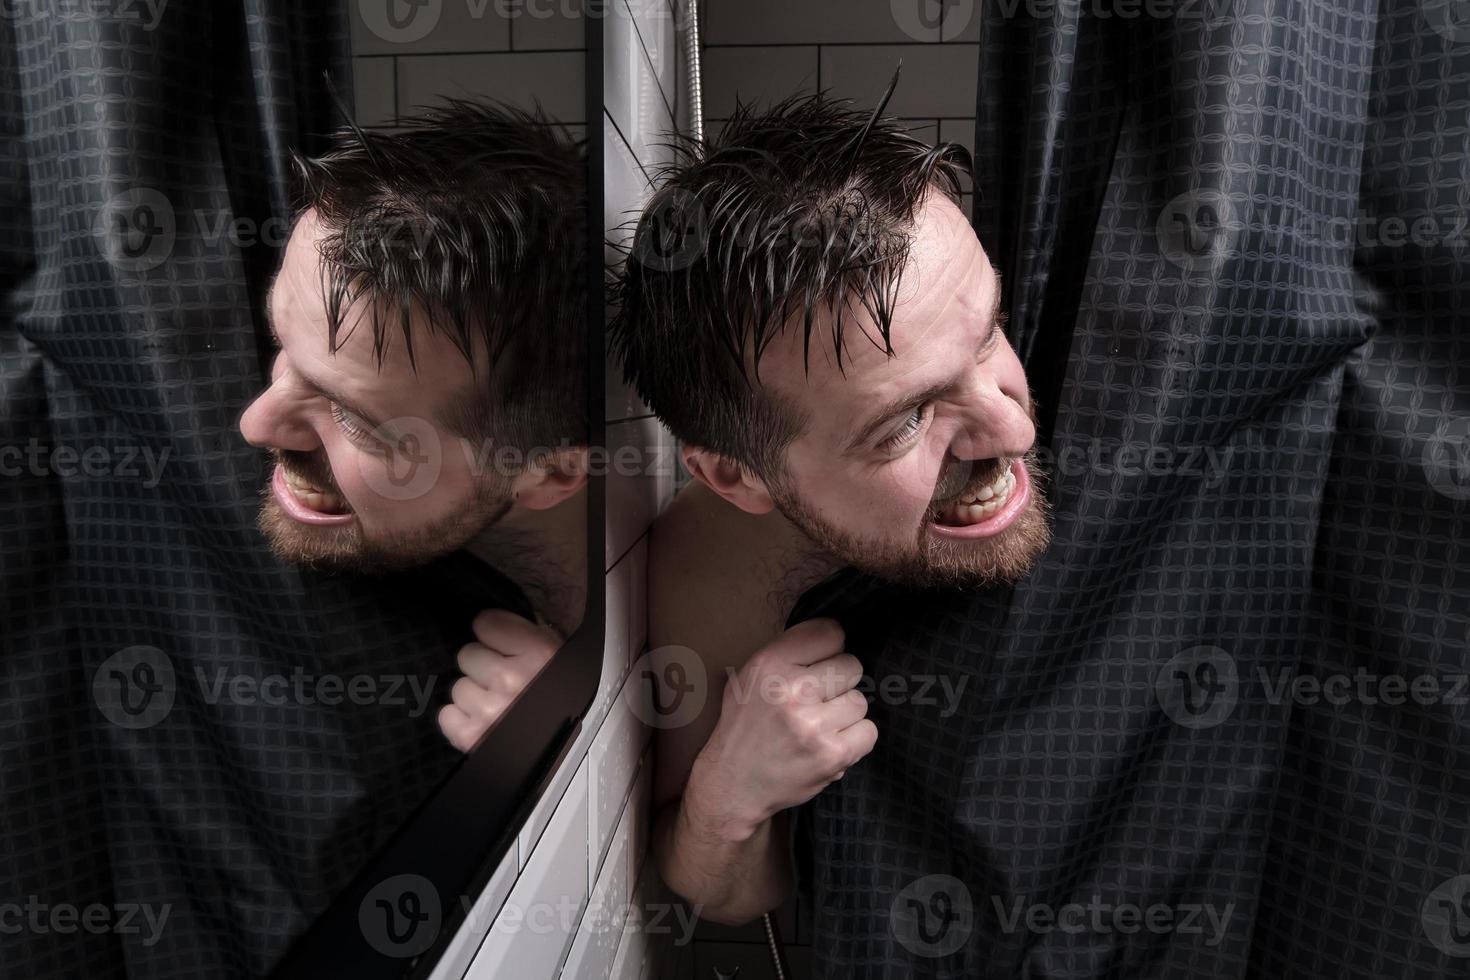 våt man utseende ut från Bakom en dusch ridå, utseende ondskefullt på någon och Bares hans tänder. foto